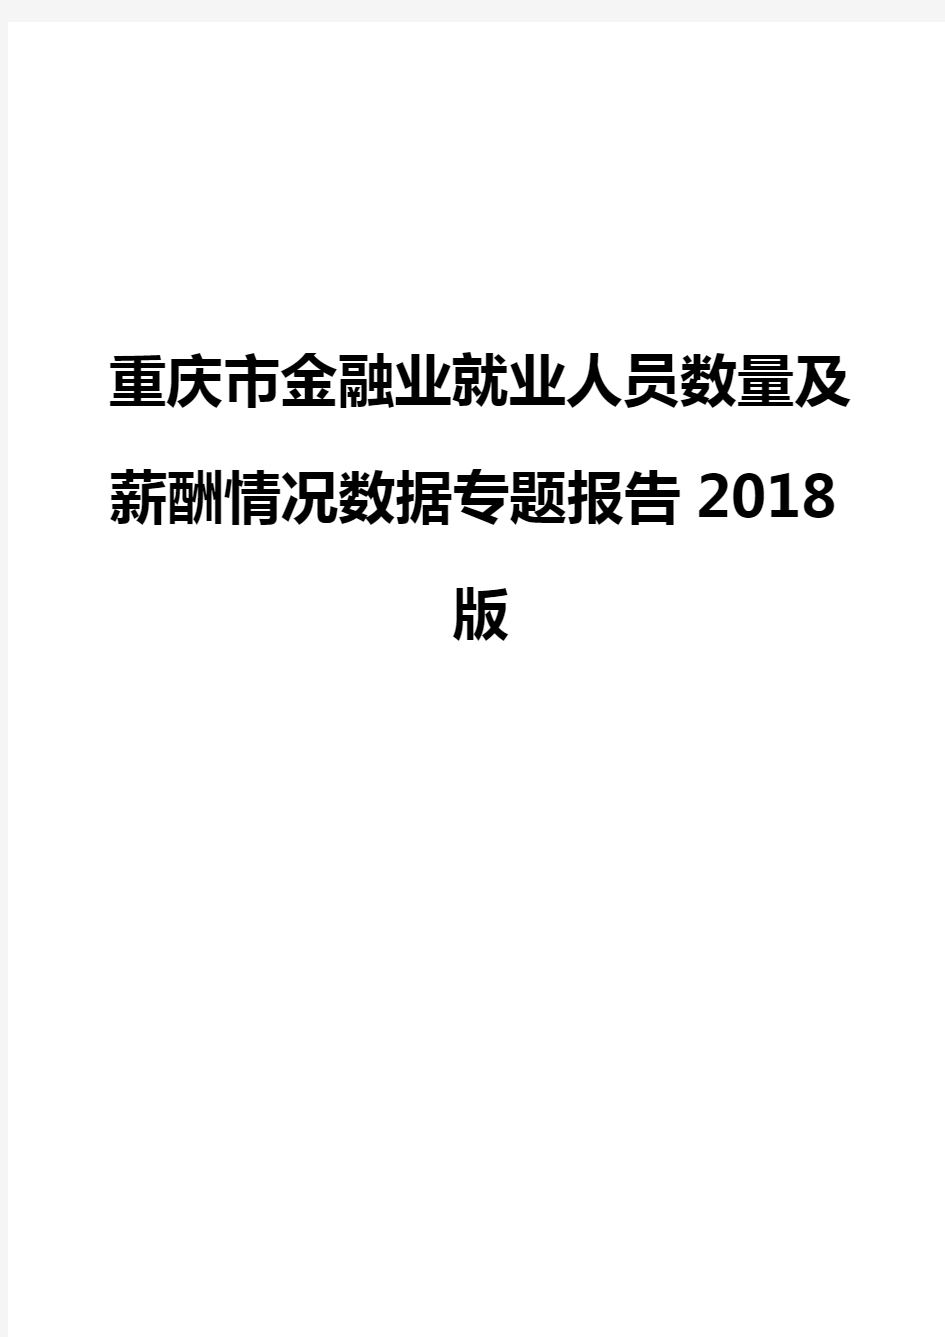 重庆市金融业就业人员数量及薪酬情况数据专题报告2018版